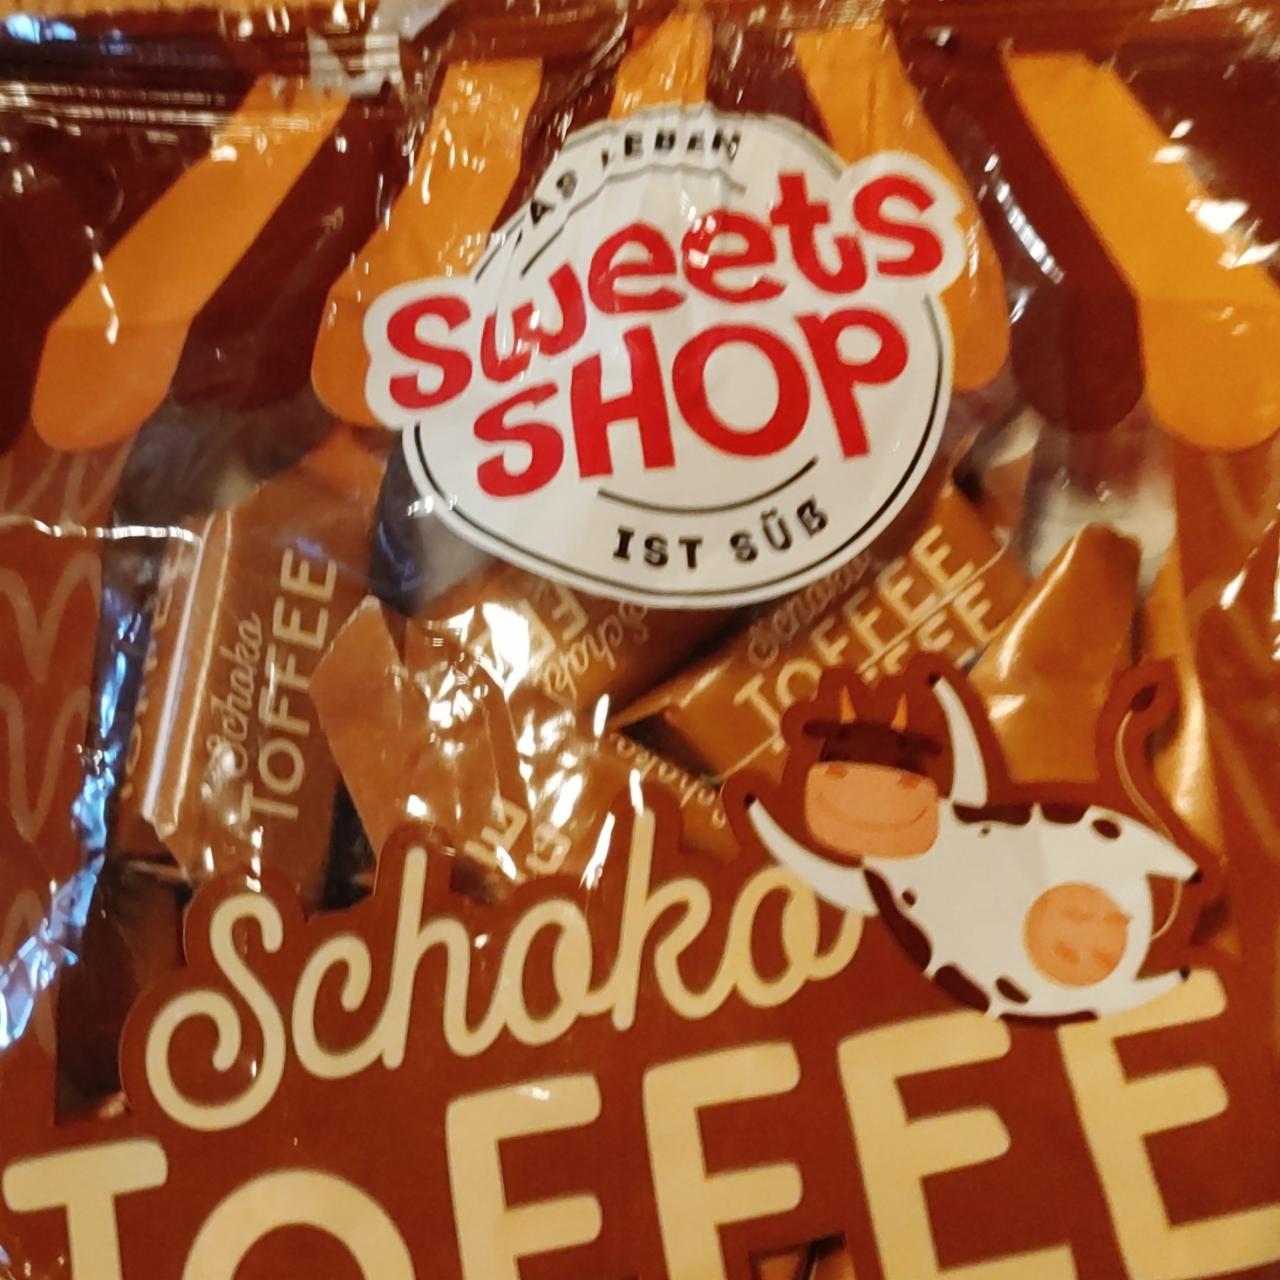 Fotografie - Schoko Toffee Sweets Shop